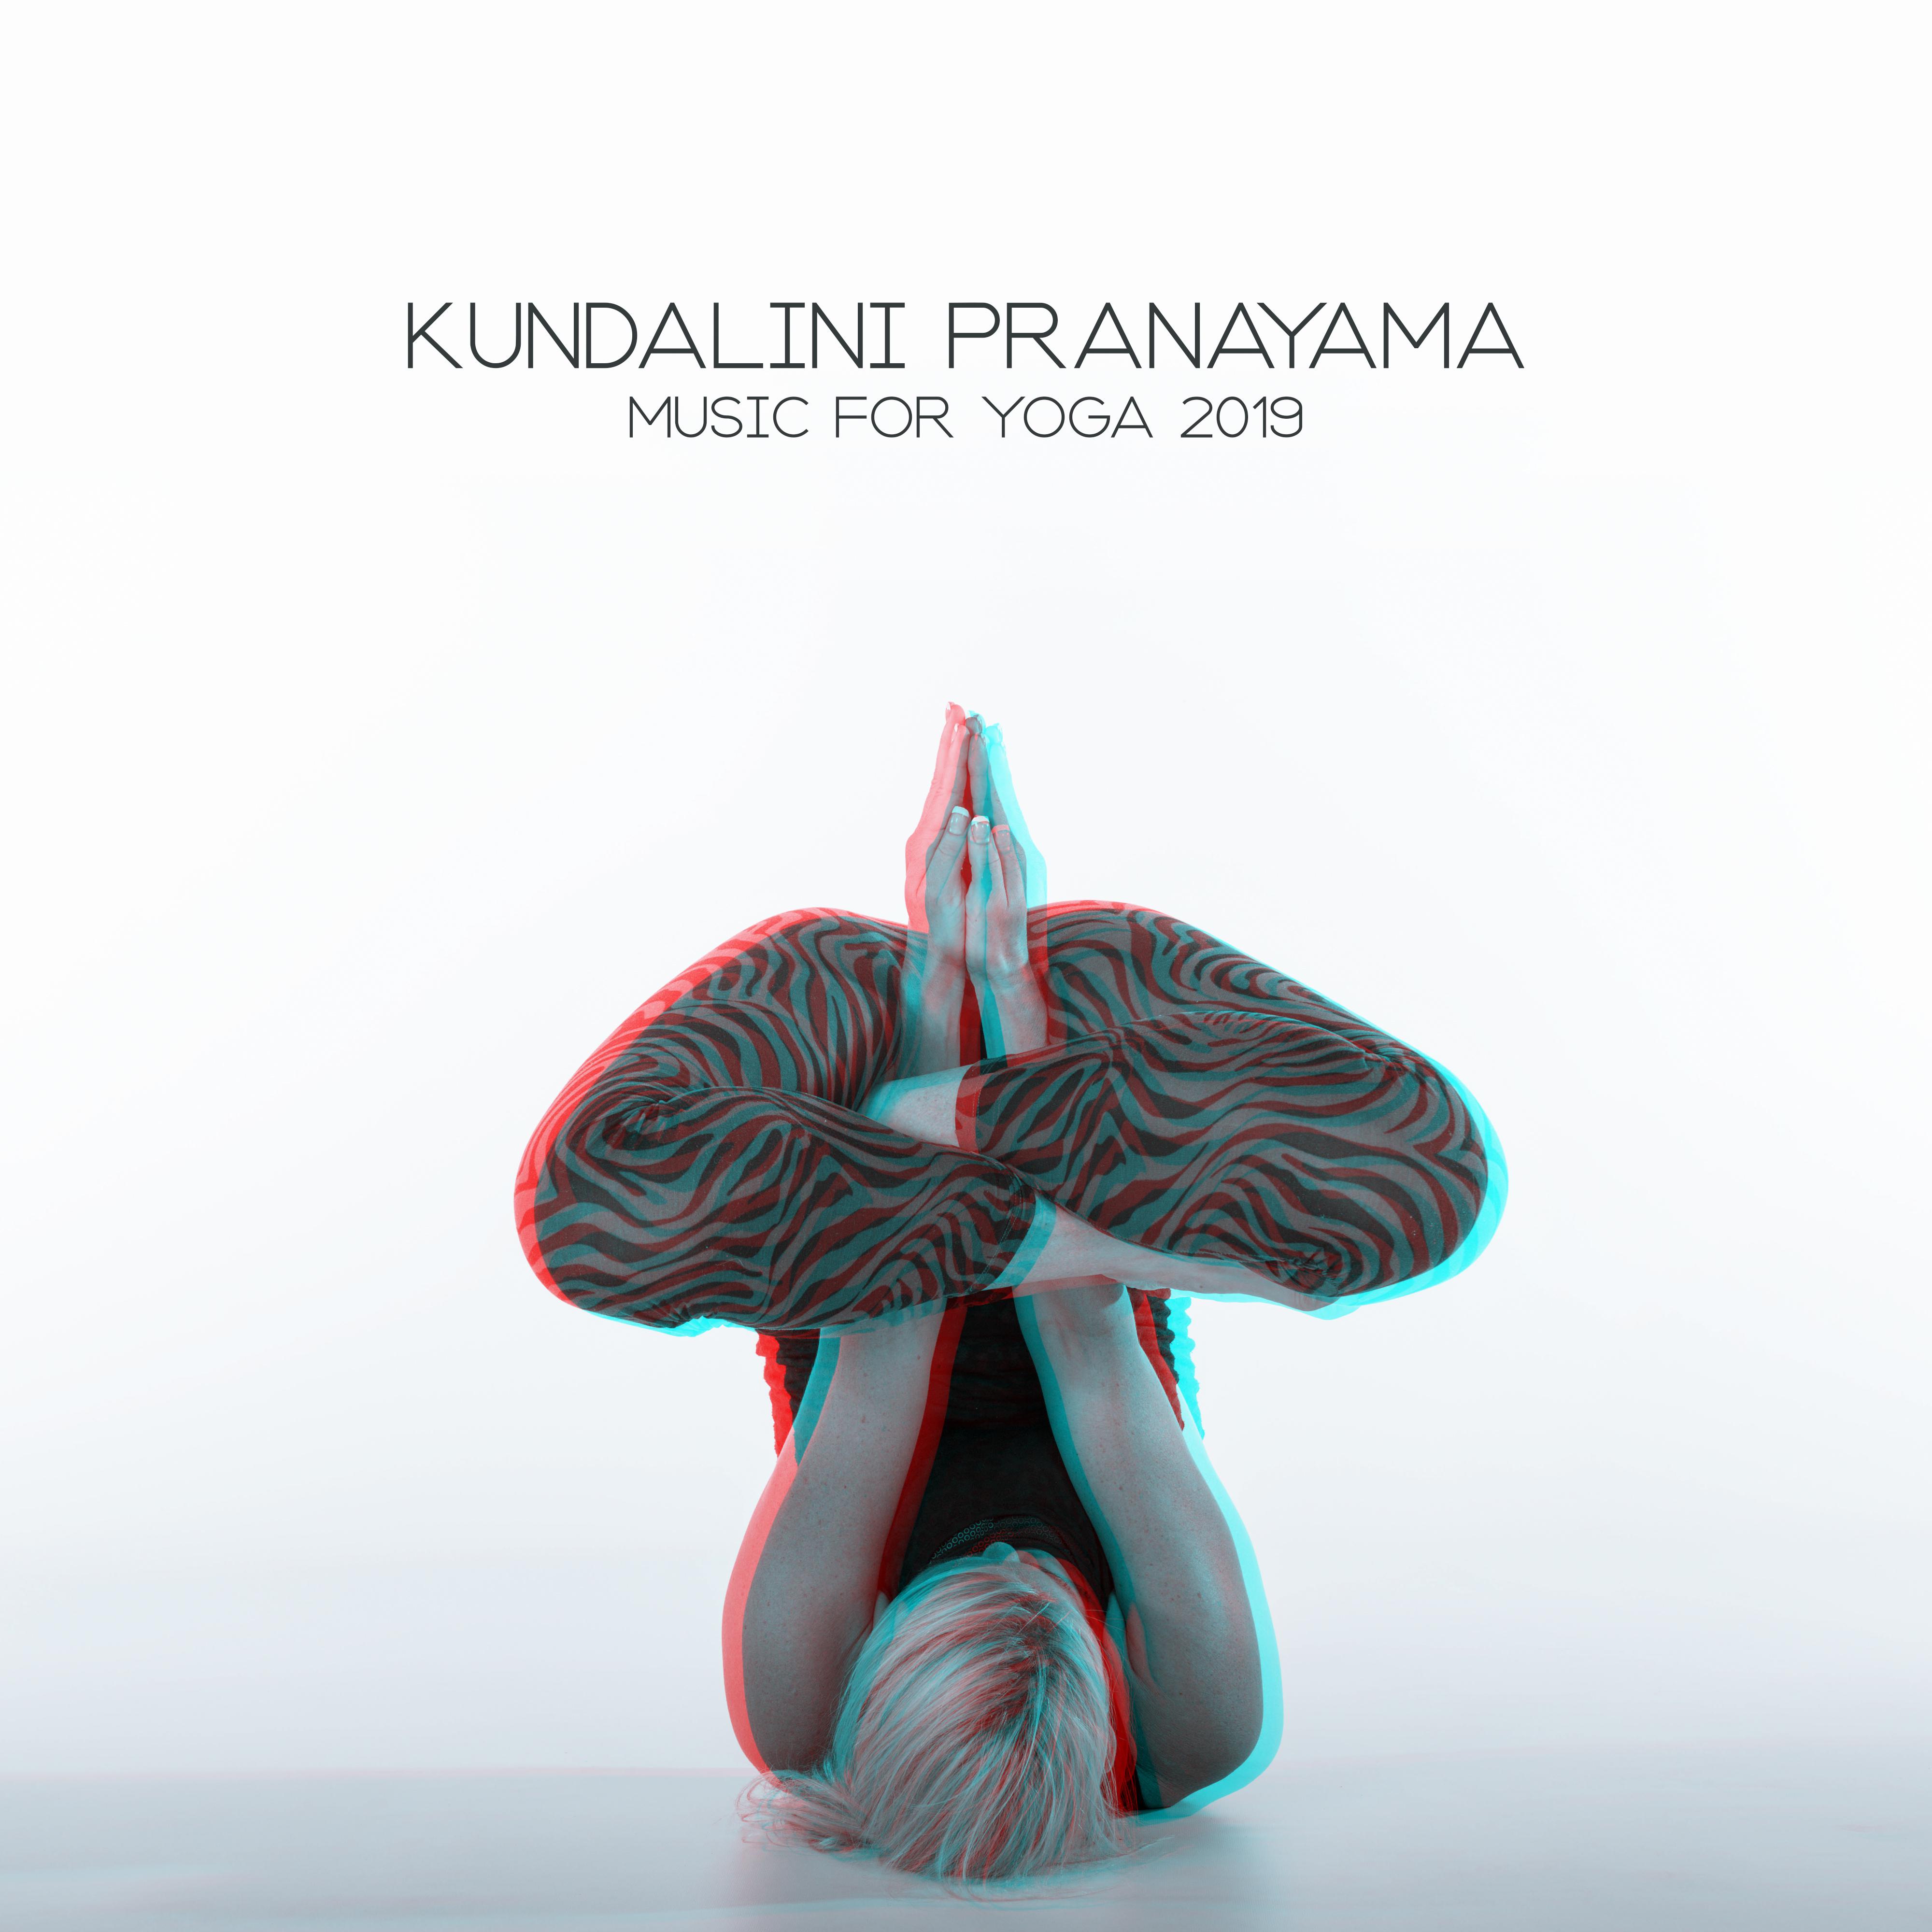 Kundalini Pranayama: Music for Yoga 2019